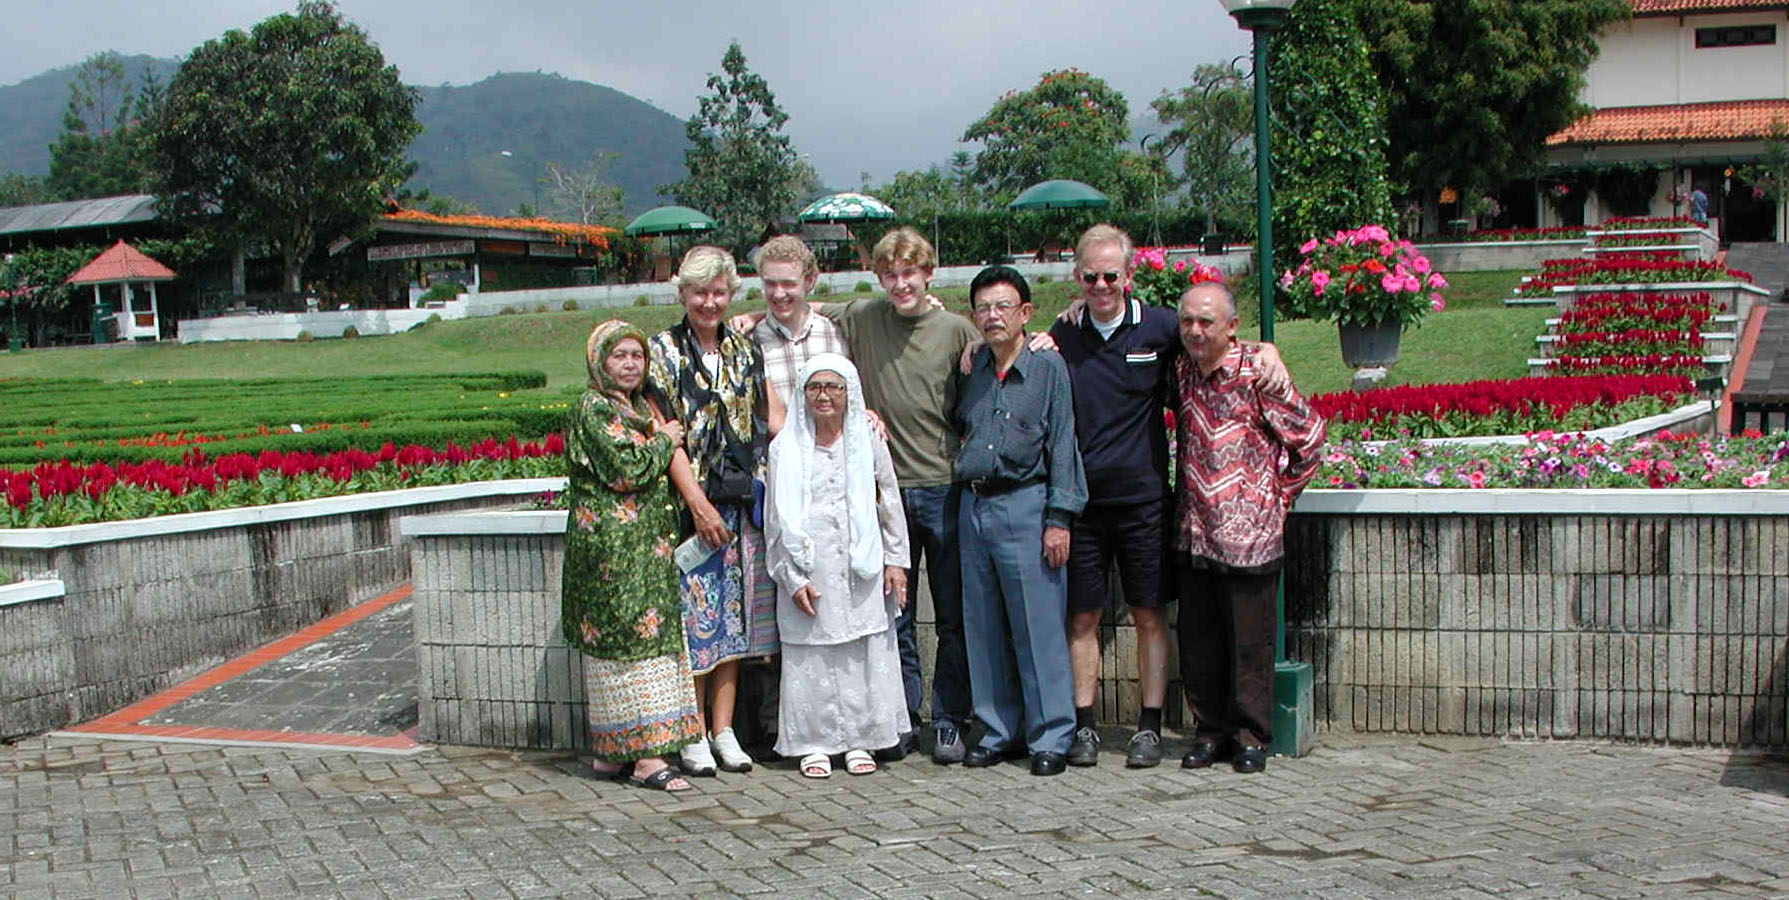 Gerke met zijn familie bij de familie in 2001